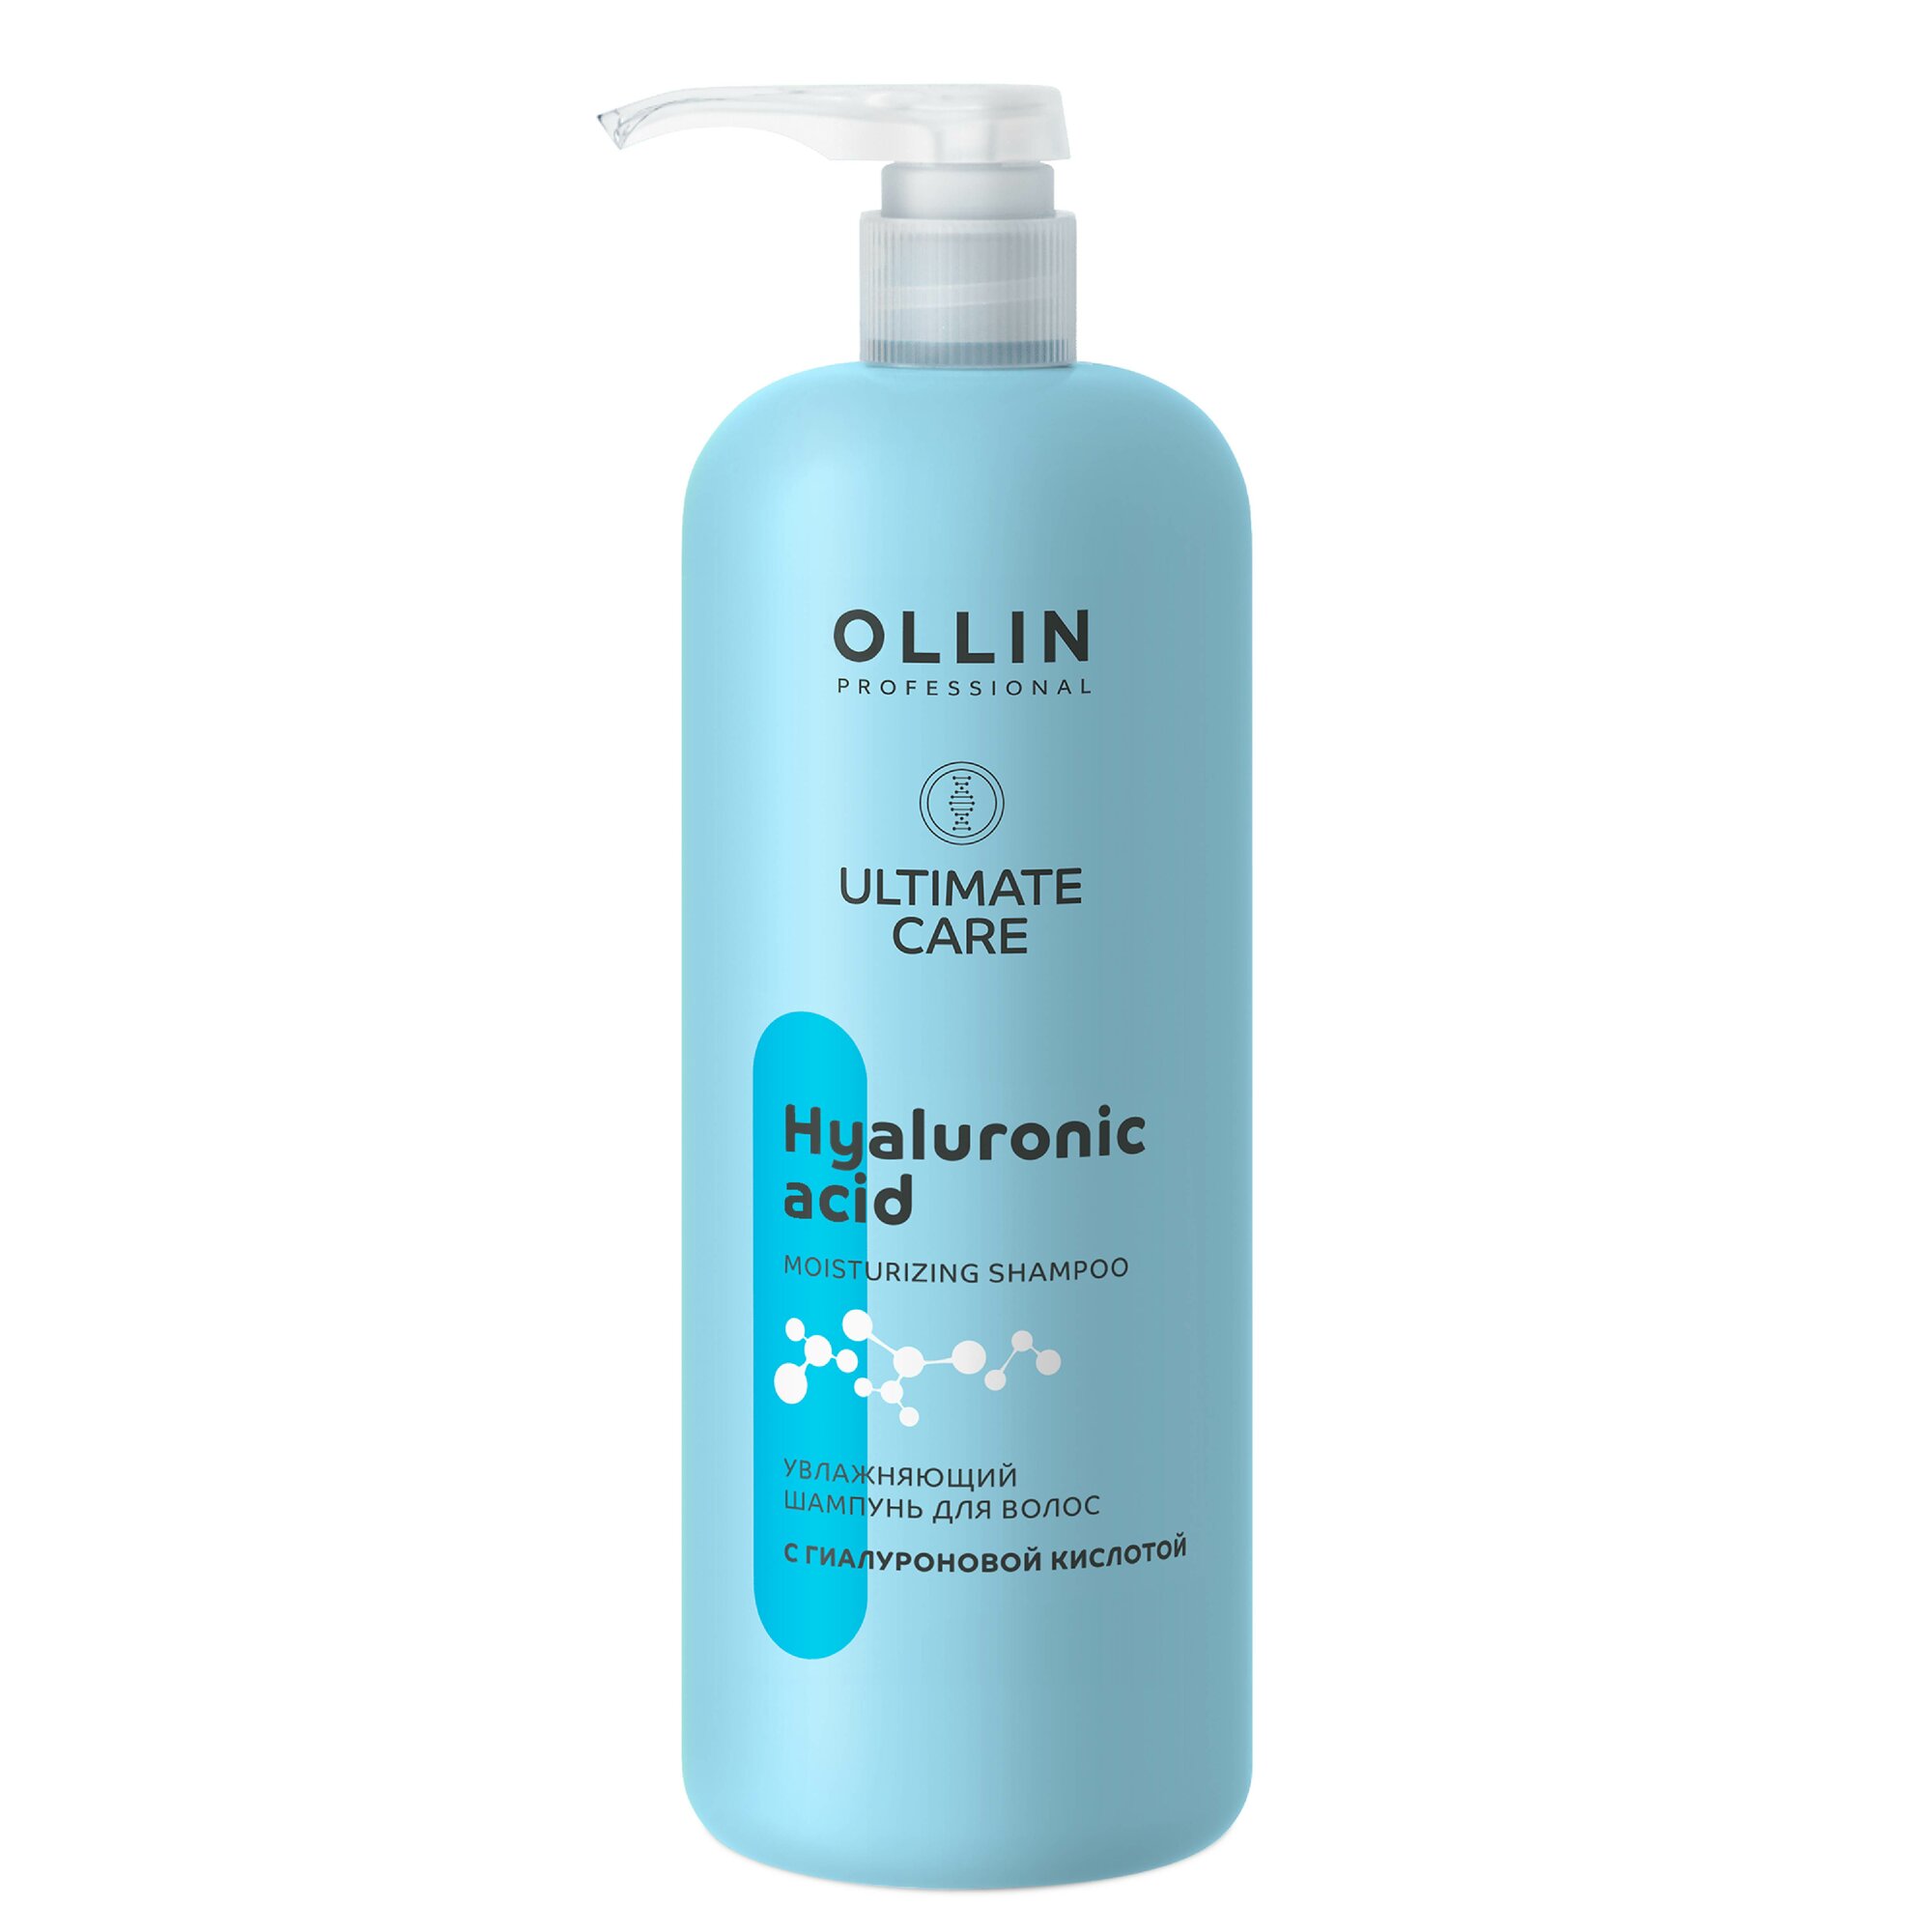 Шампунь ULTIMATE CARE для увлажнения волос OLLIN PROFESSIONAL с гиалуроновой кислотой 1000 мл